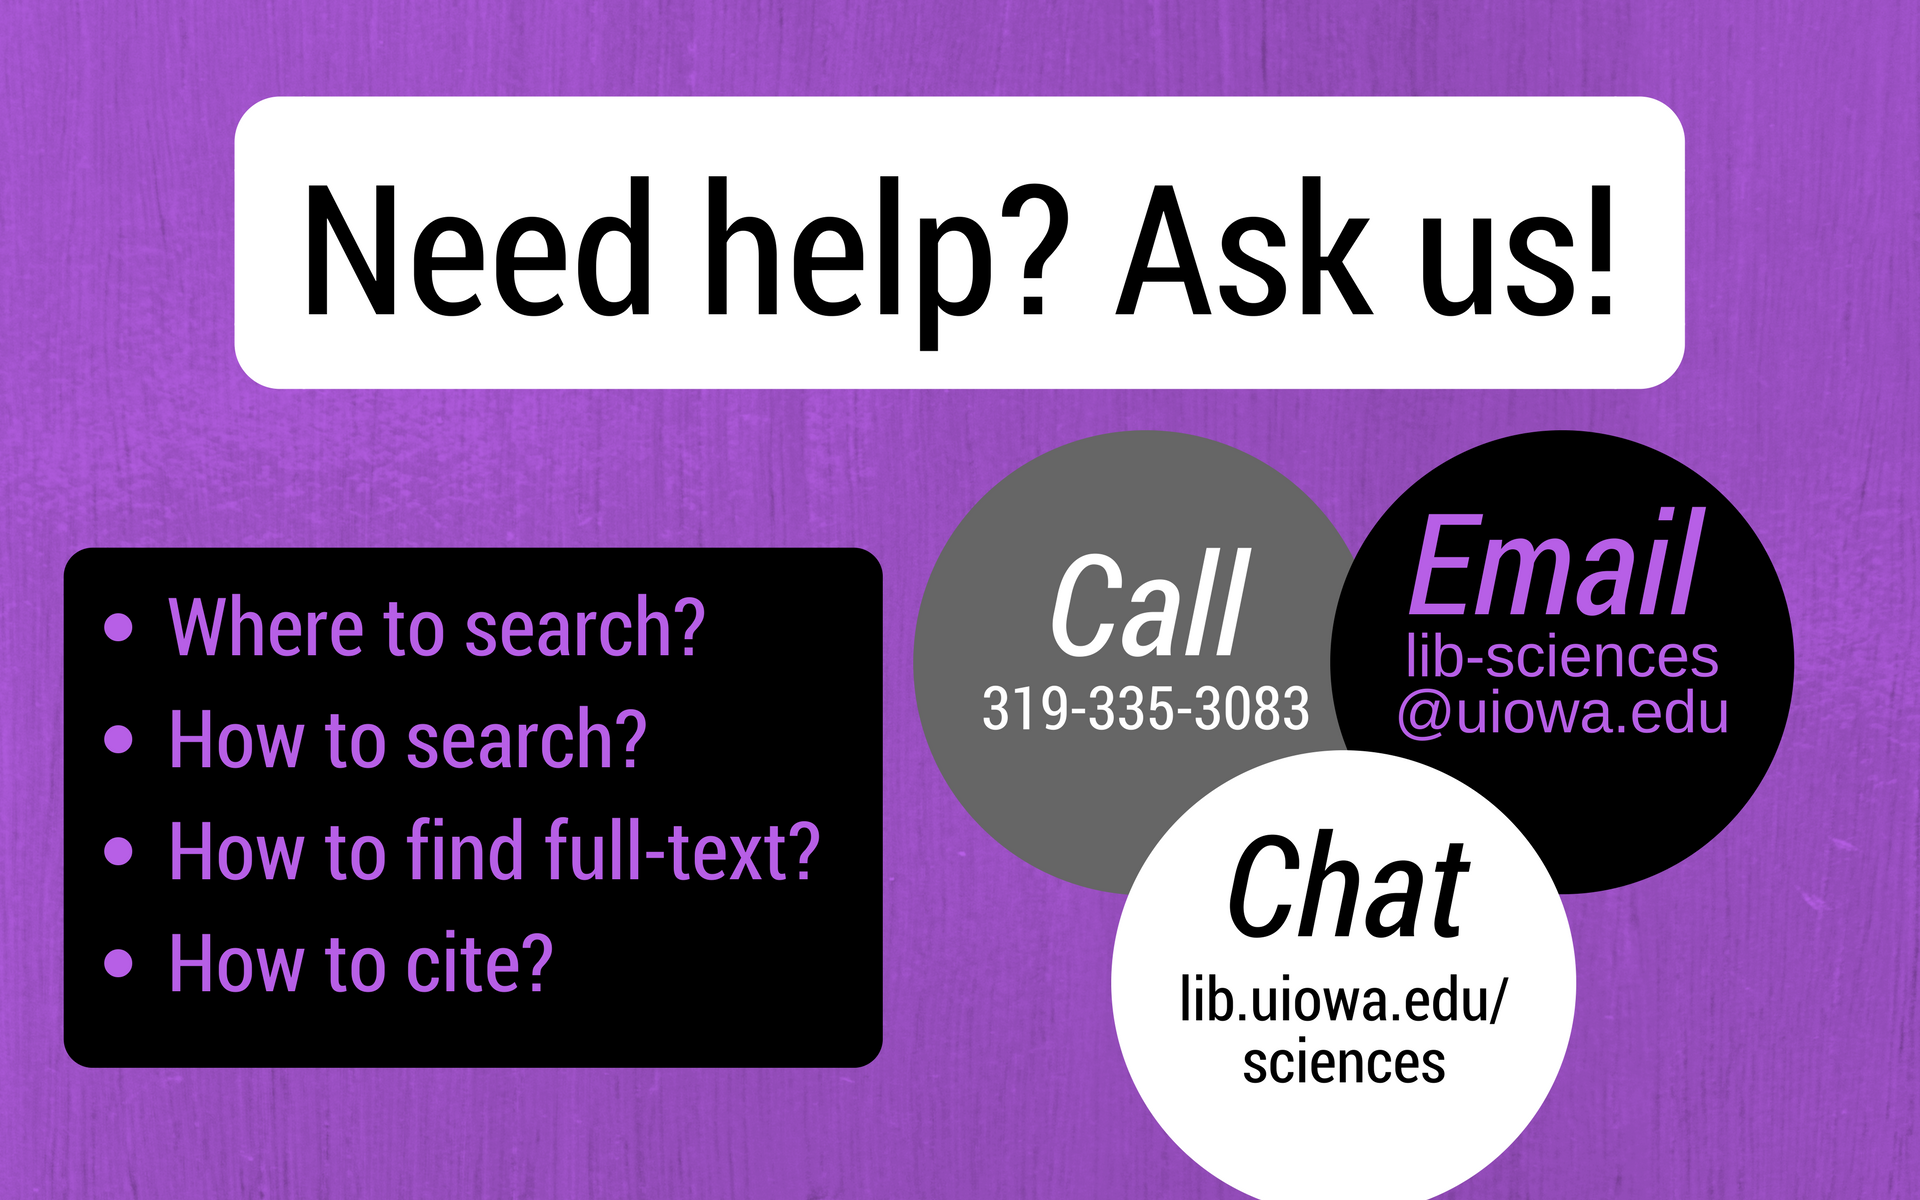 Need help? Ask us!